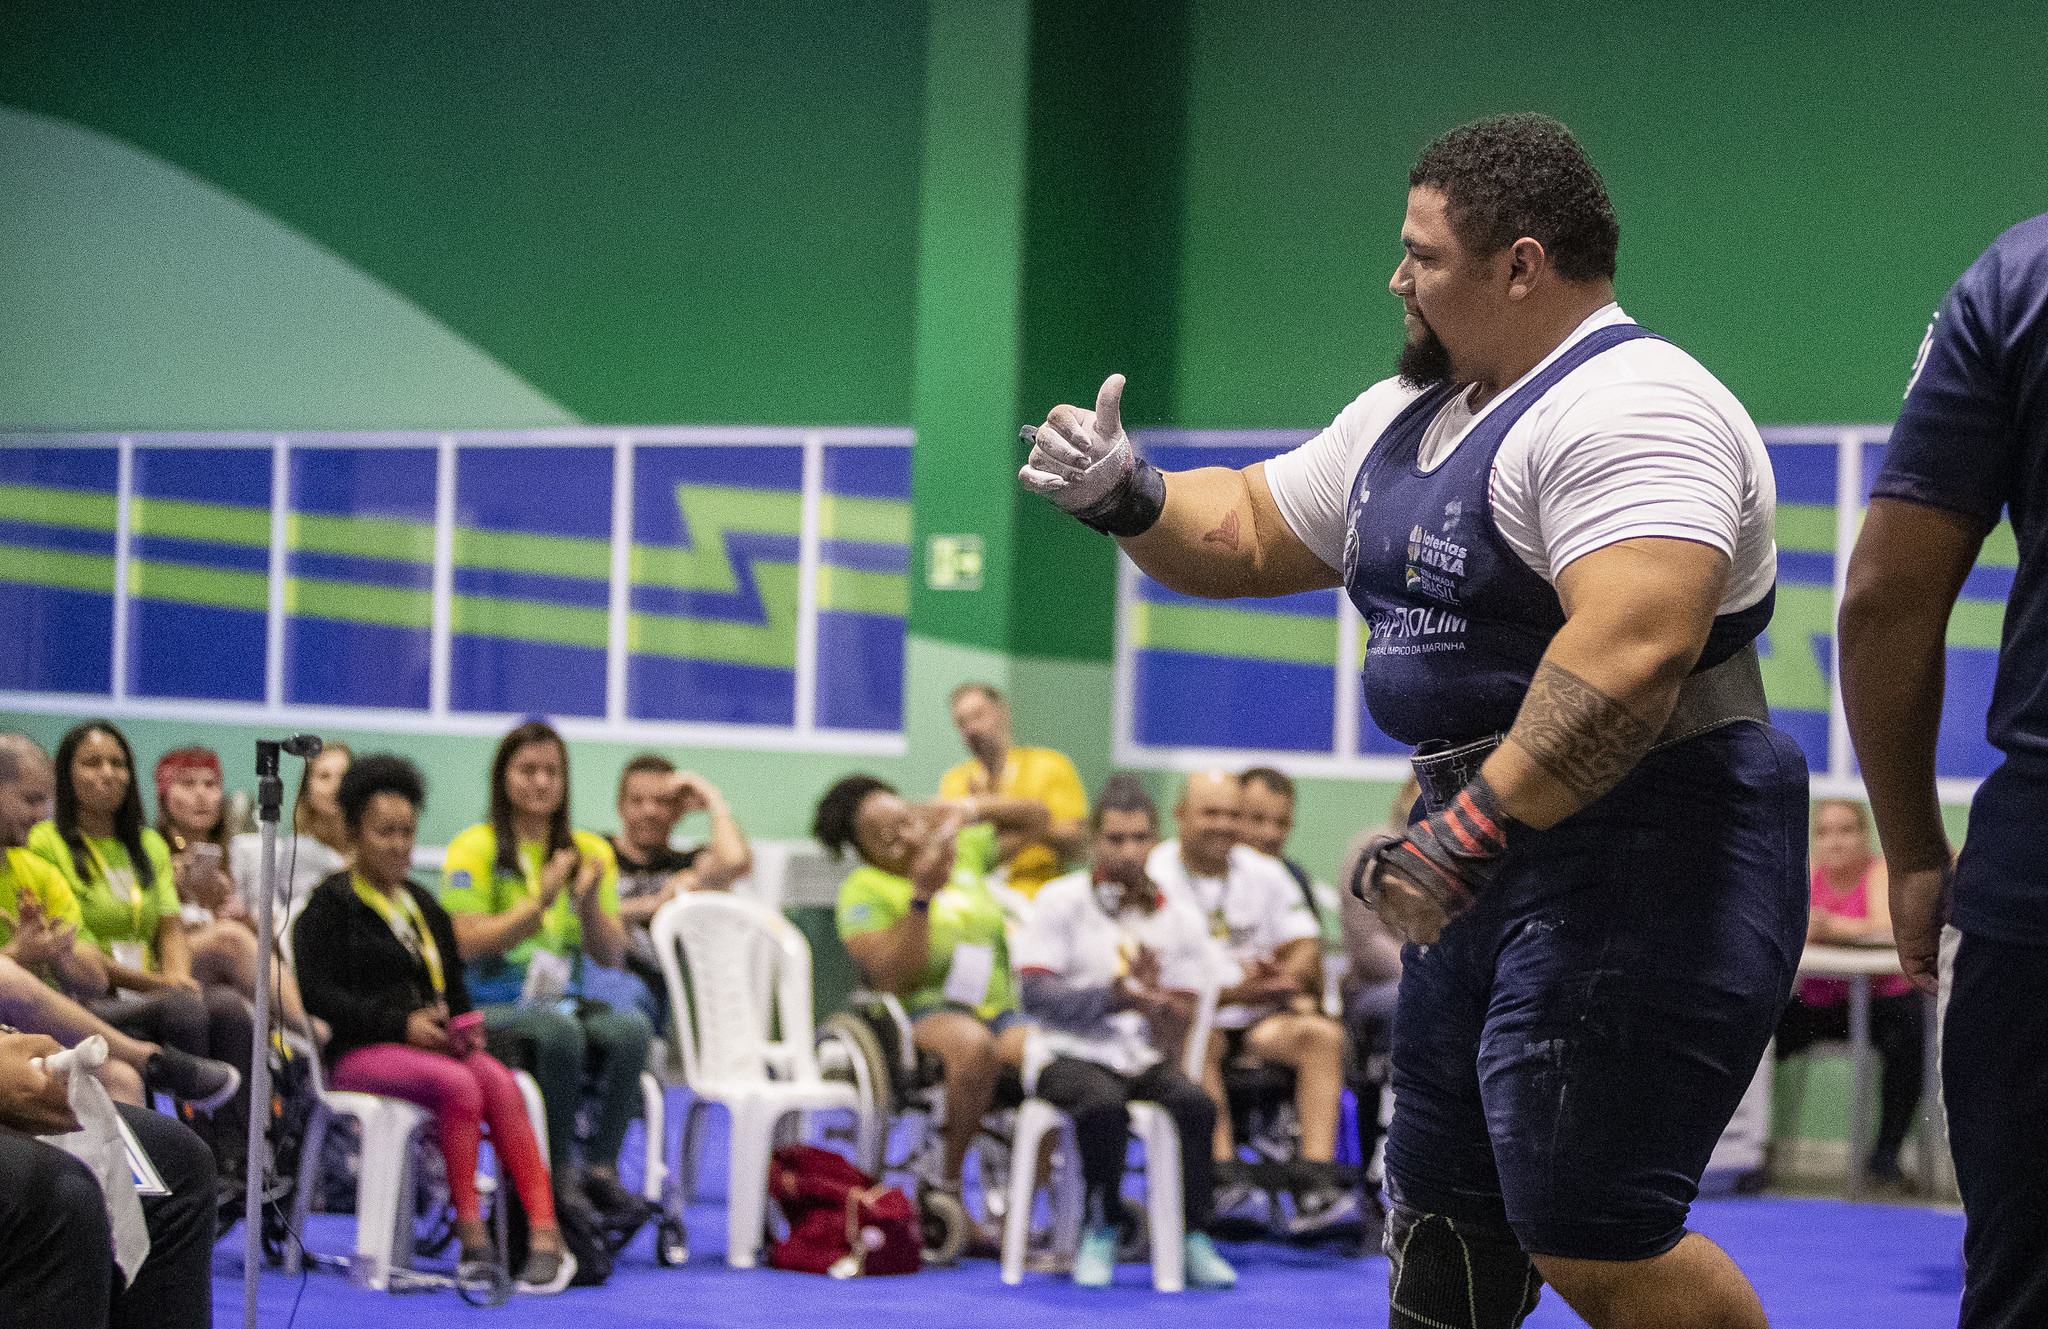 CPB realiza 2º Meeting Paralímpico Loterias Caixa de tiro esportivo no RJ  neste final de semana - CPB